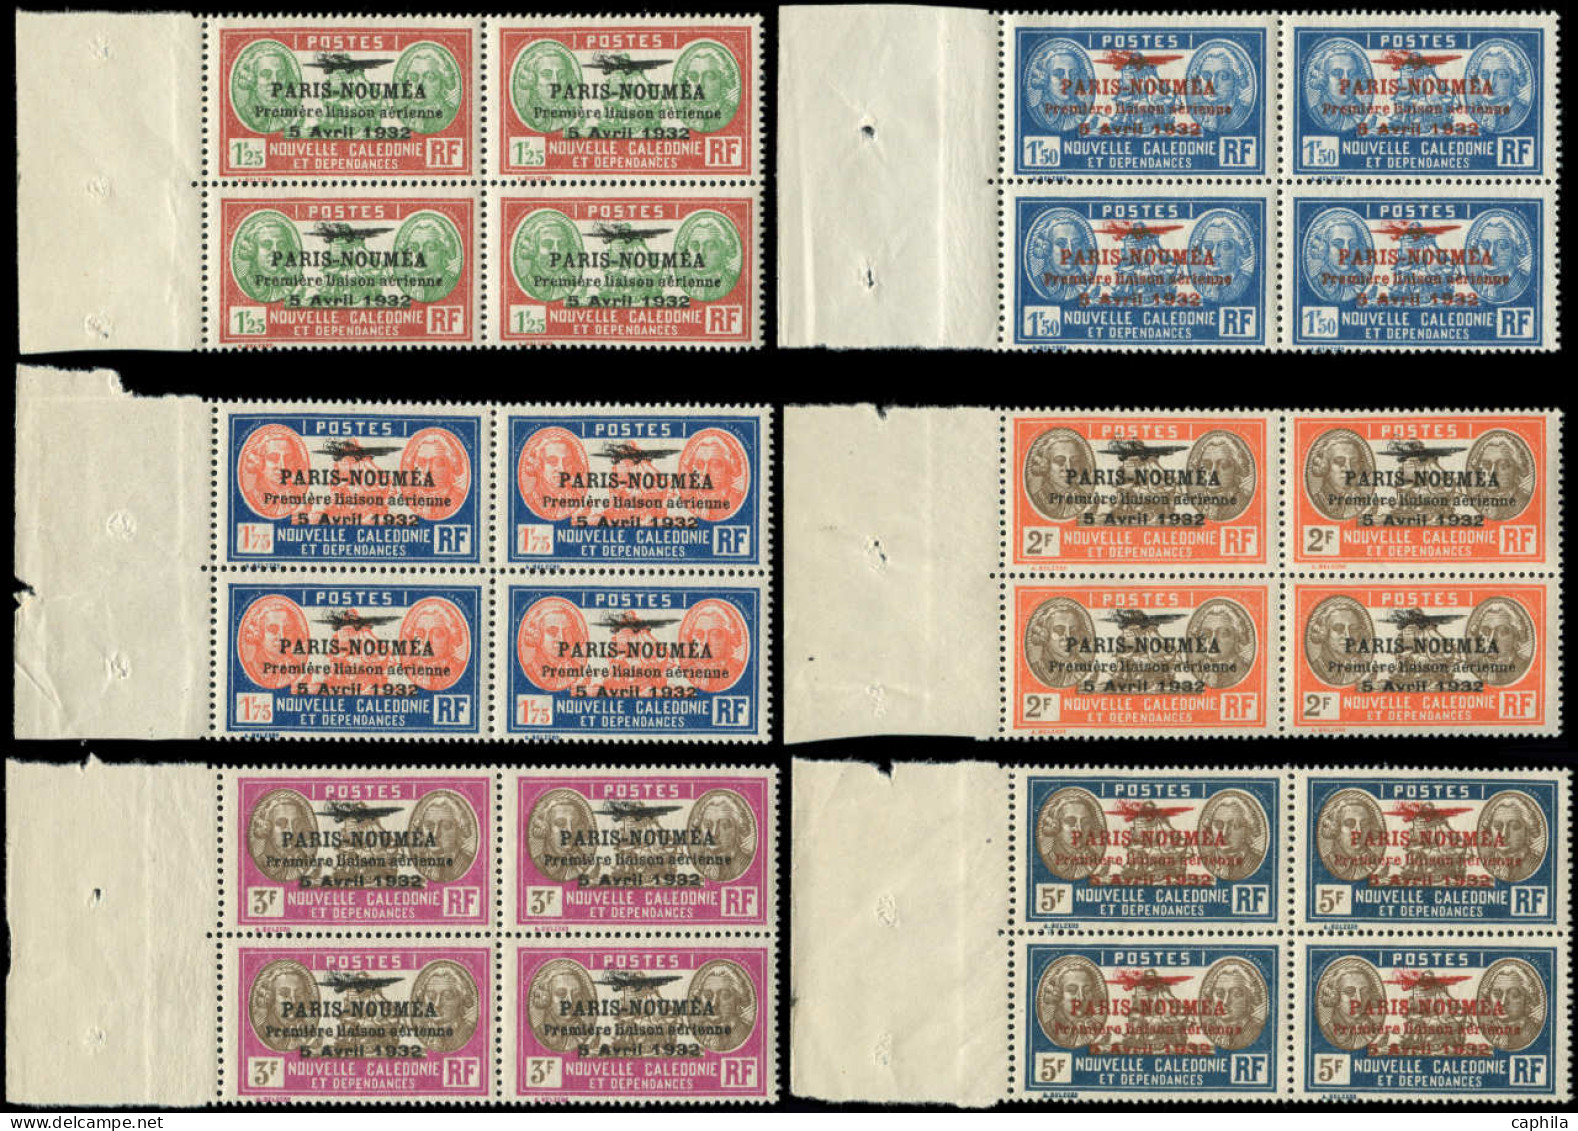 ** NOUVELLE-CALEDONIE - Poste Aérienne - 3/28, complet, 26 blocs de 4, tous Bdf: Paris - Nouméa 1933